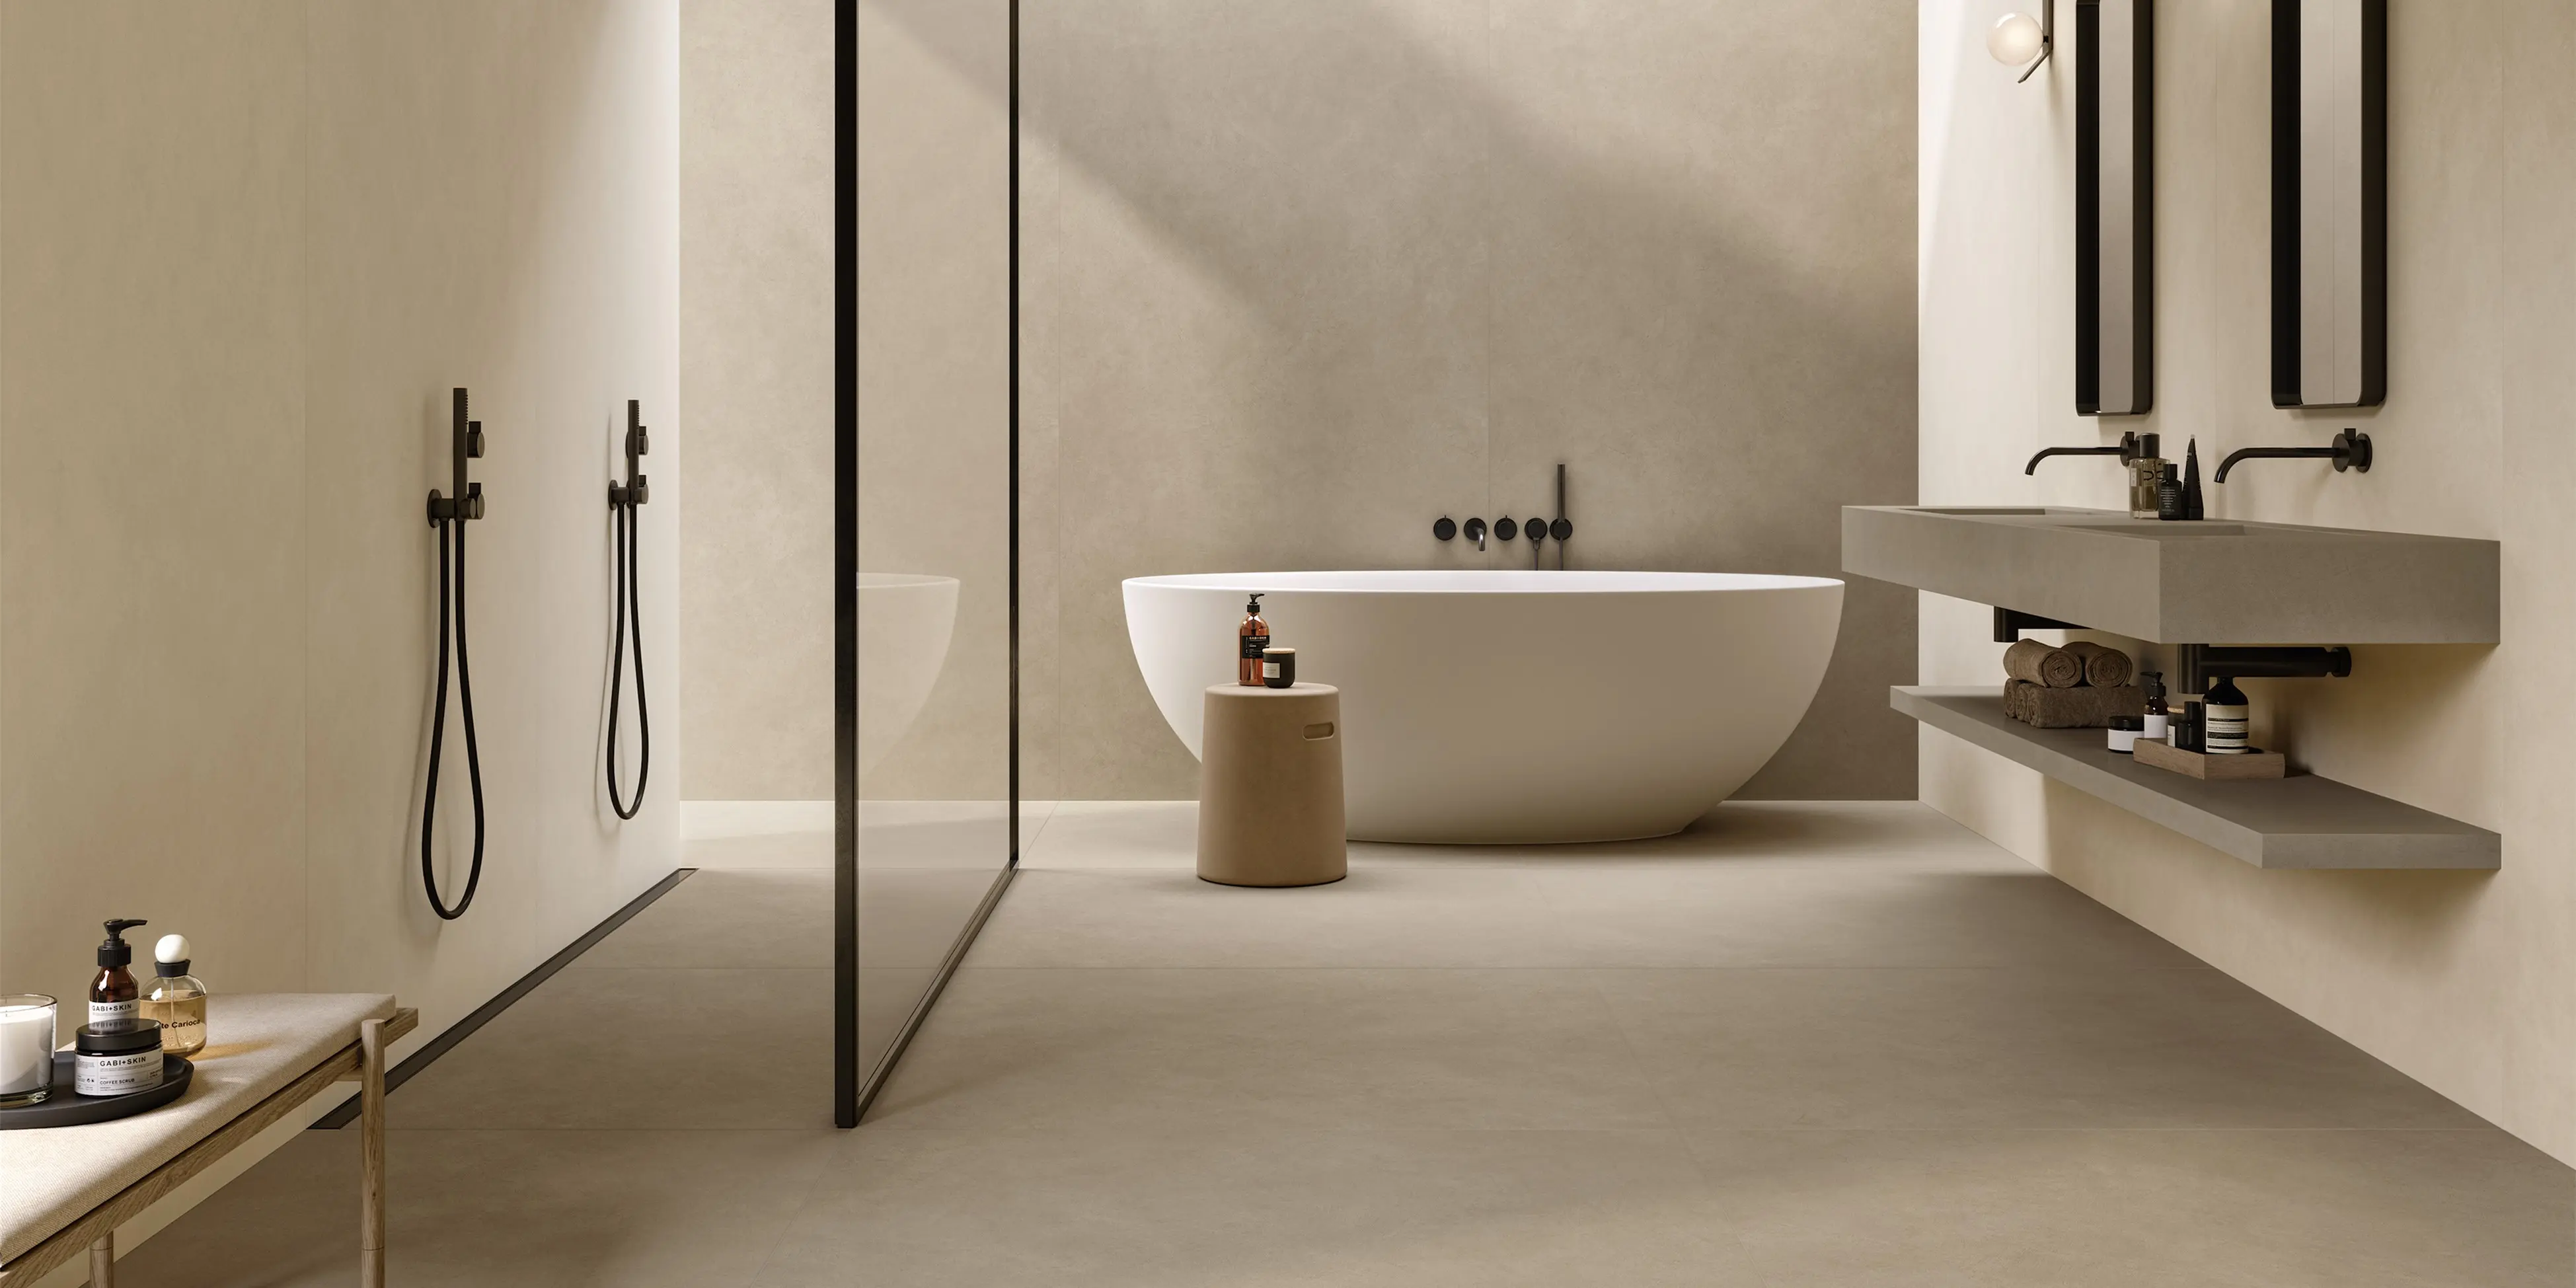 Moderne store fliser i jordlig nuancer som giver enkelt udseende i badet. Kun få vigtige elementer, som vask lavet af de samme fliser, og glasbruseniche er i rummet.